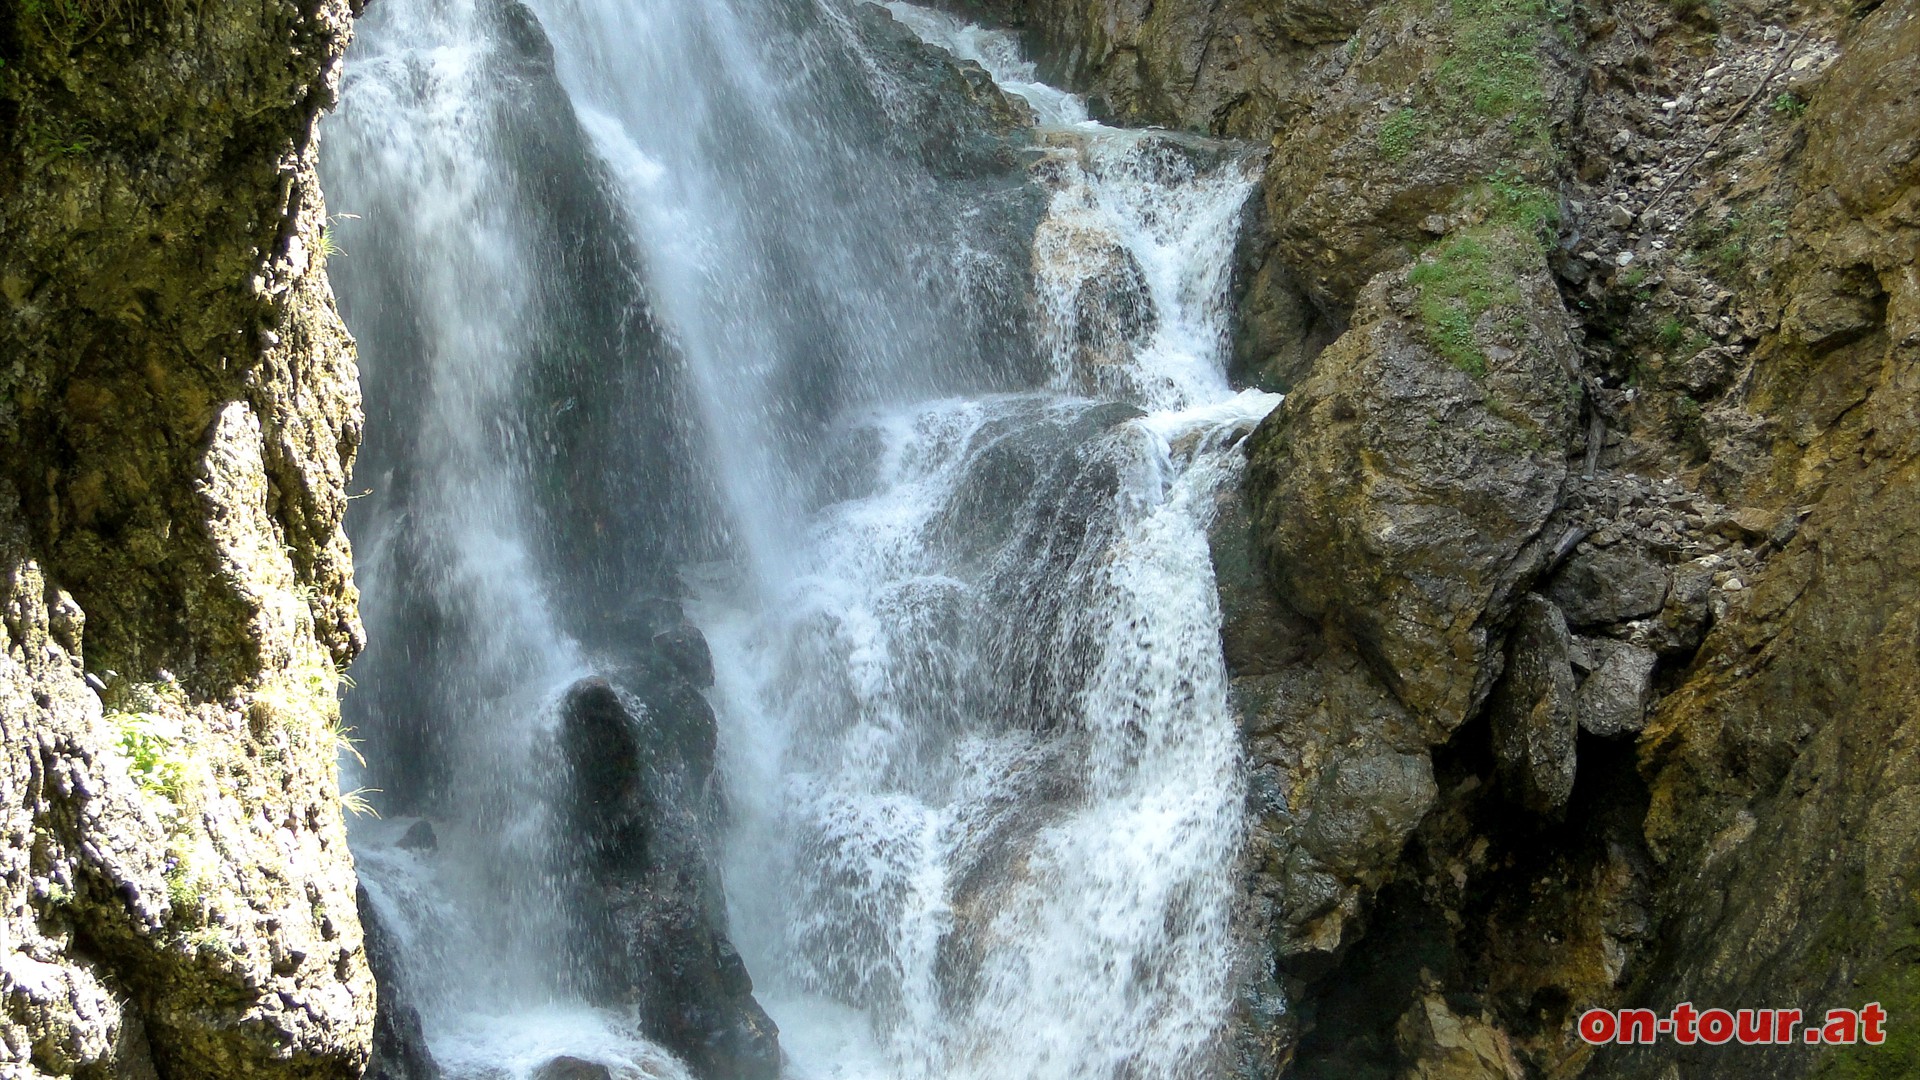 Nach der engen Schlucht präsentiert sich der zweite, 26 Meter hohe, tosende Wasserfall.